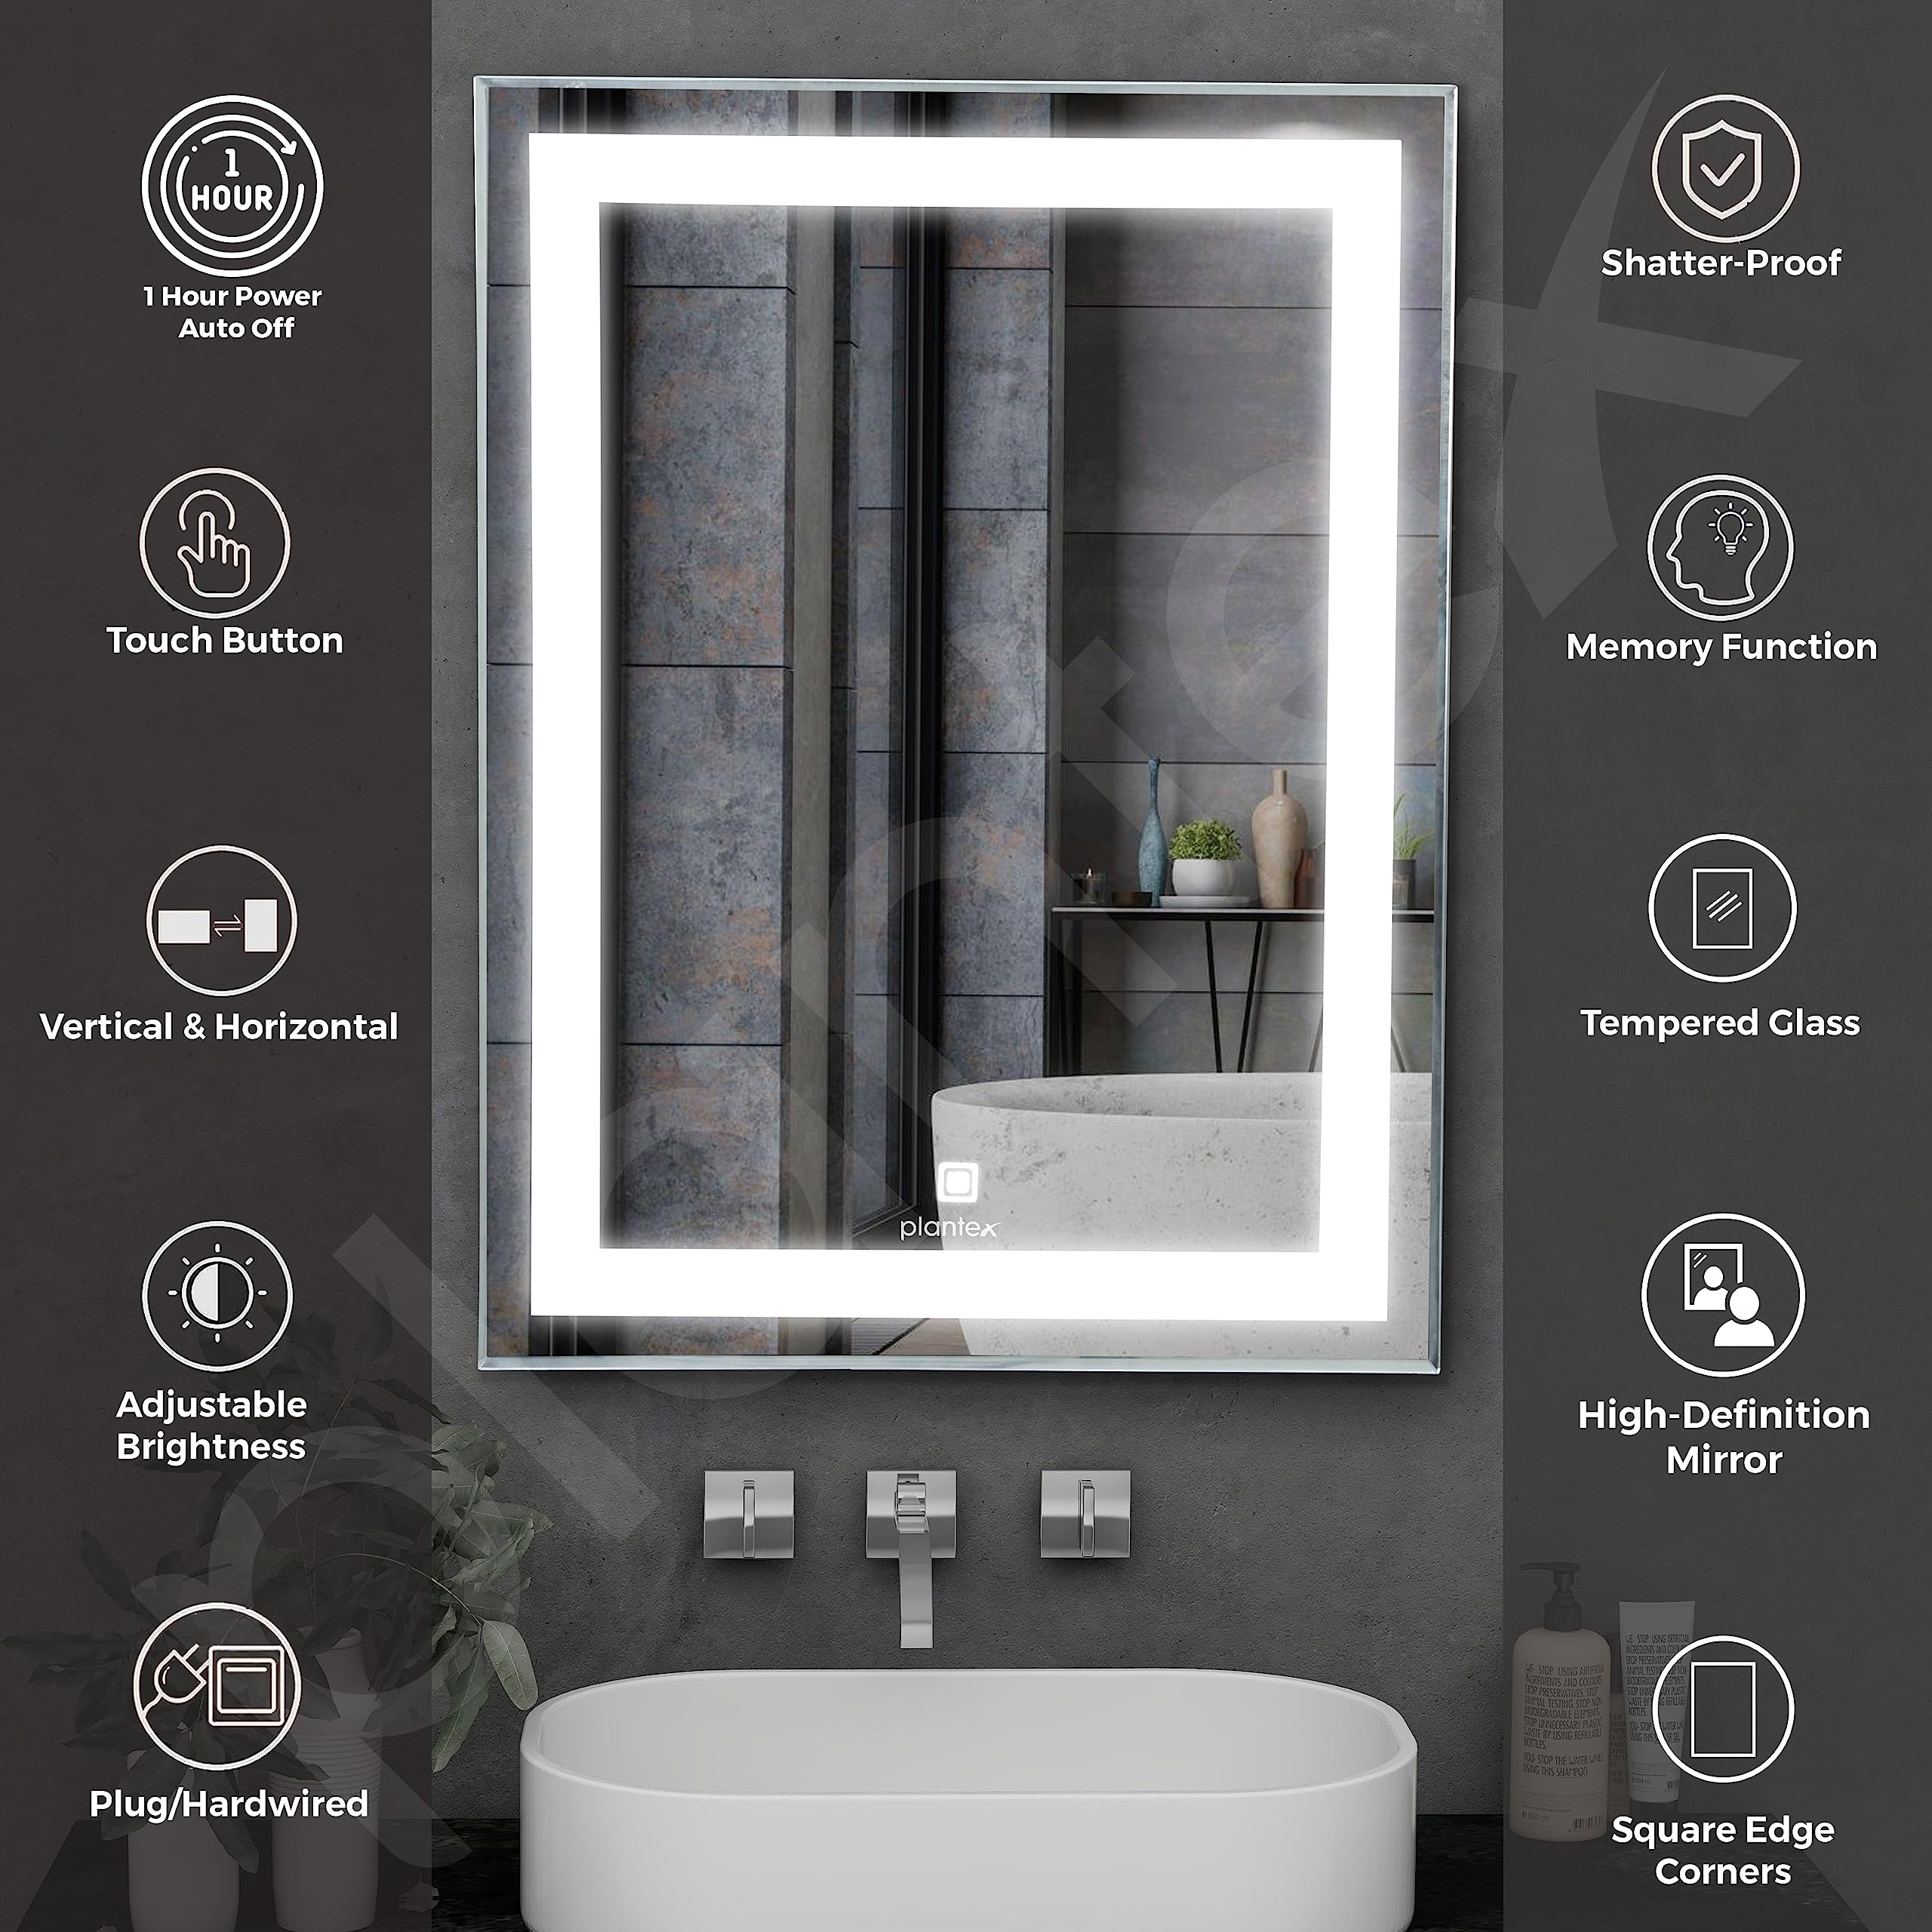 Plantex LED Mirror Glass with Sensor for Bathroom/Single Tone Light(White Light)/Designer Mirror for Living Room/Bedroom/Dressing Room – Rectangle Shape (18x24 inch)